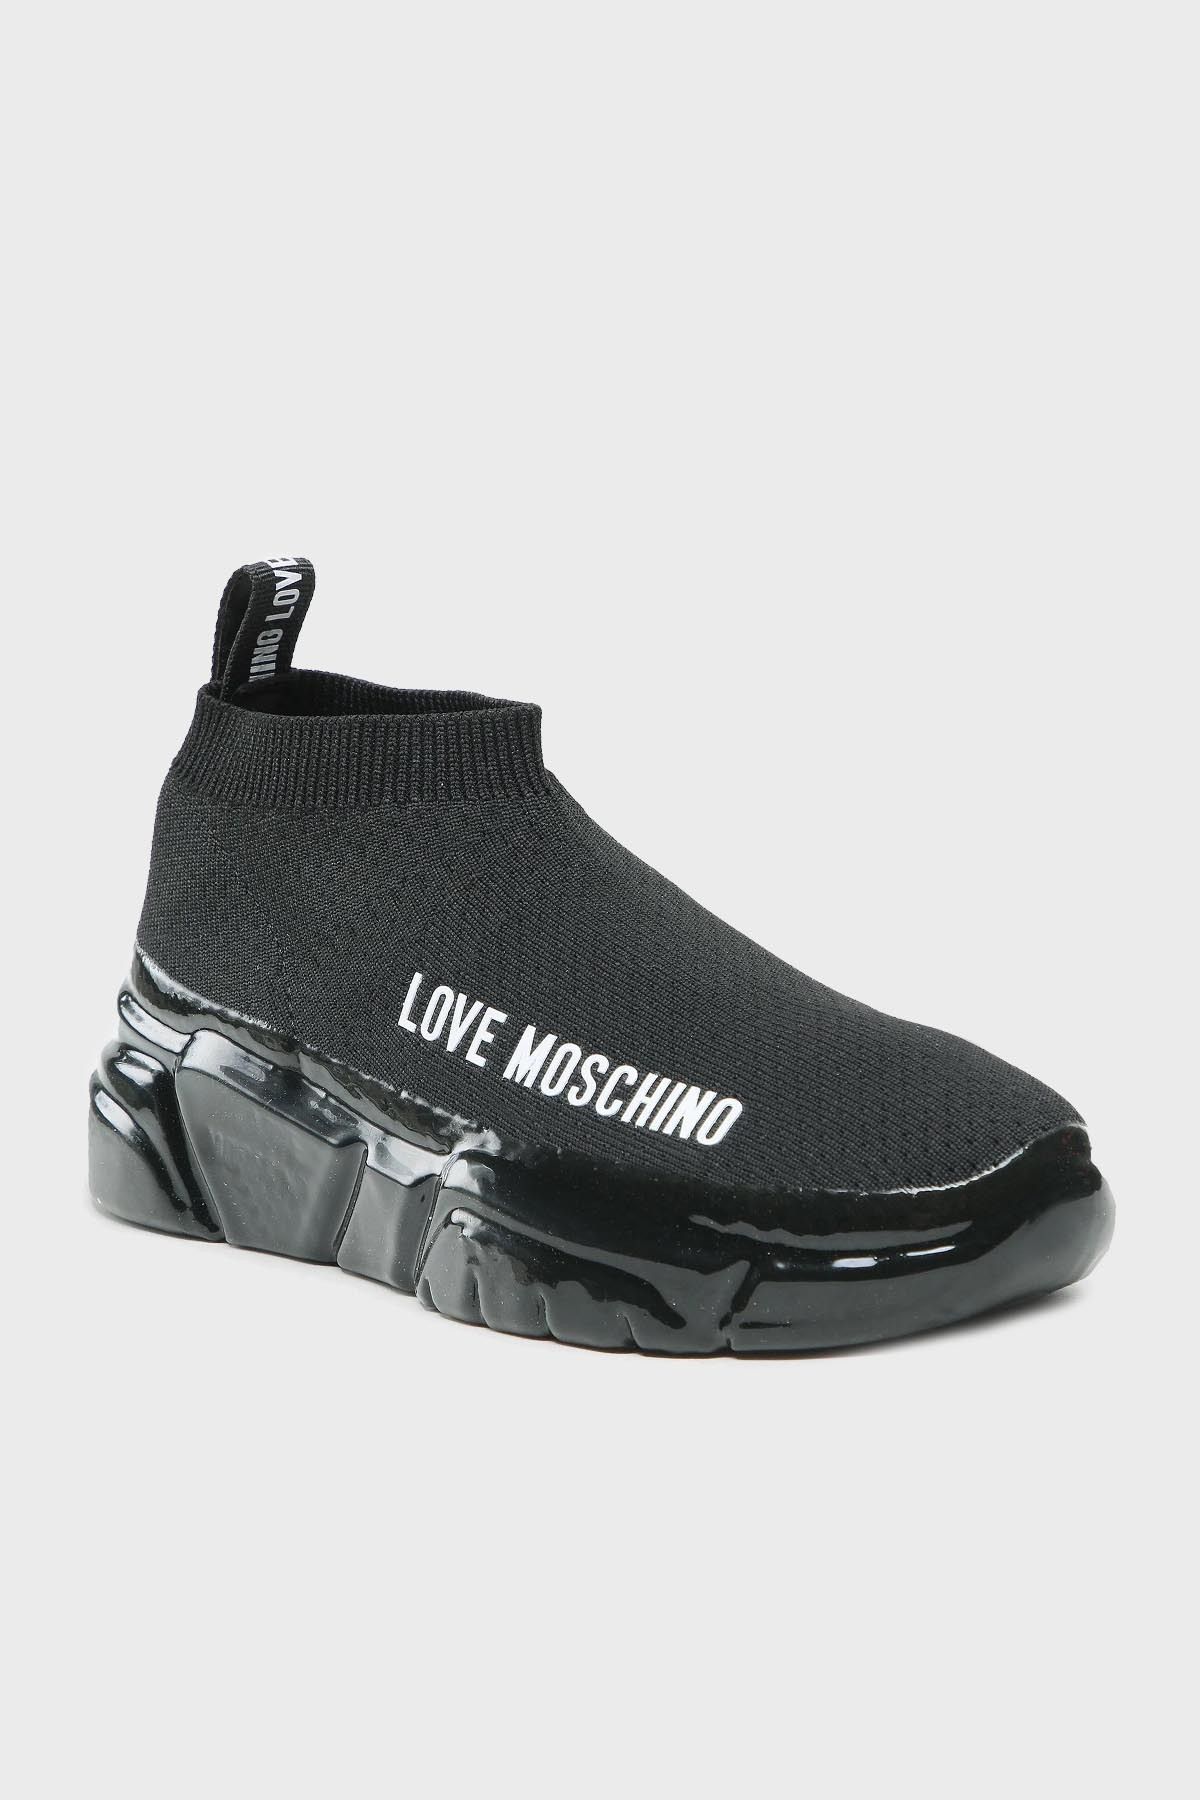 Moschino Logolu Sneaker Ayakkabı AYAKKABI JA15443G1GIZB000